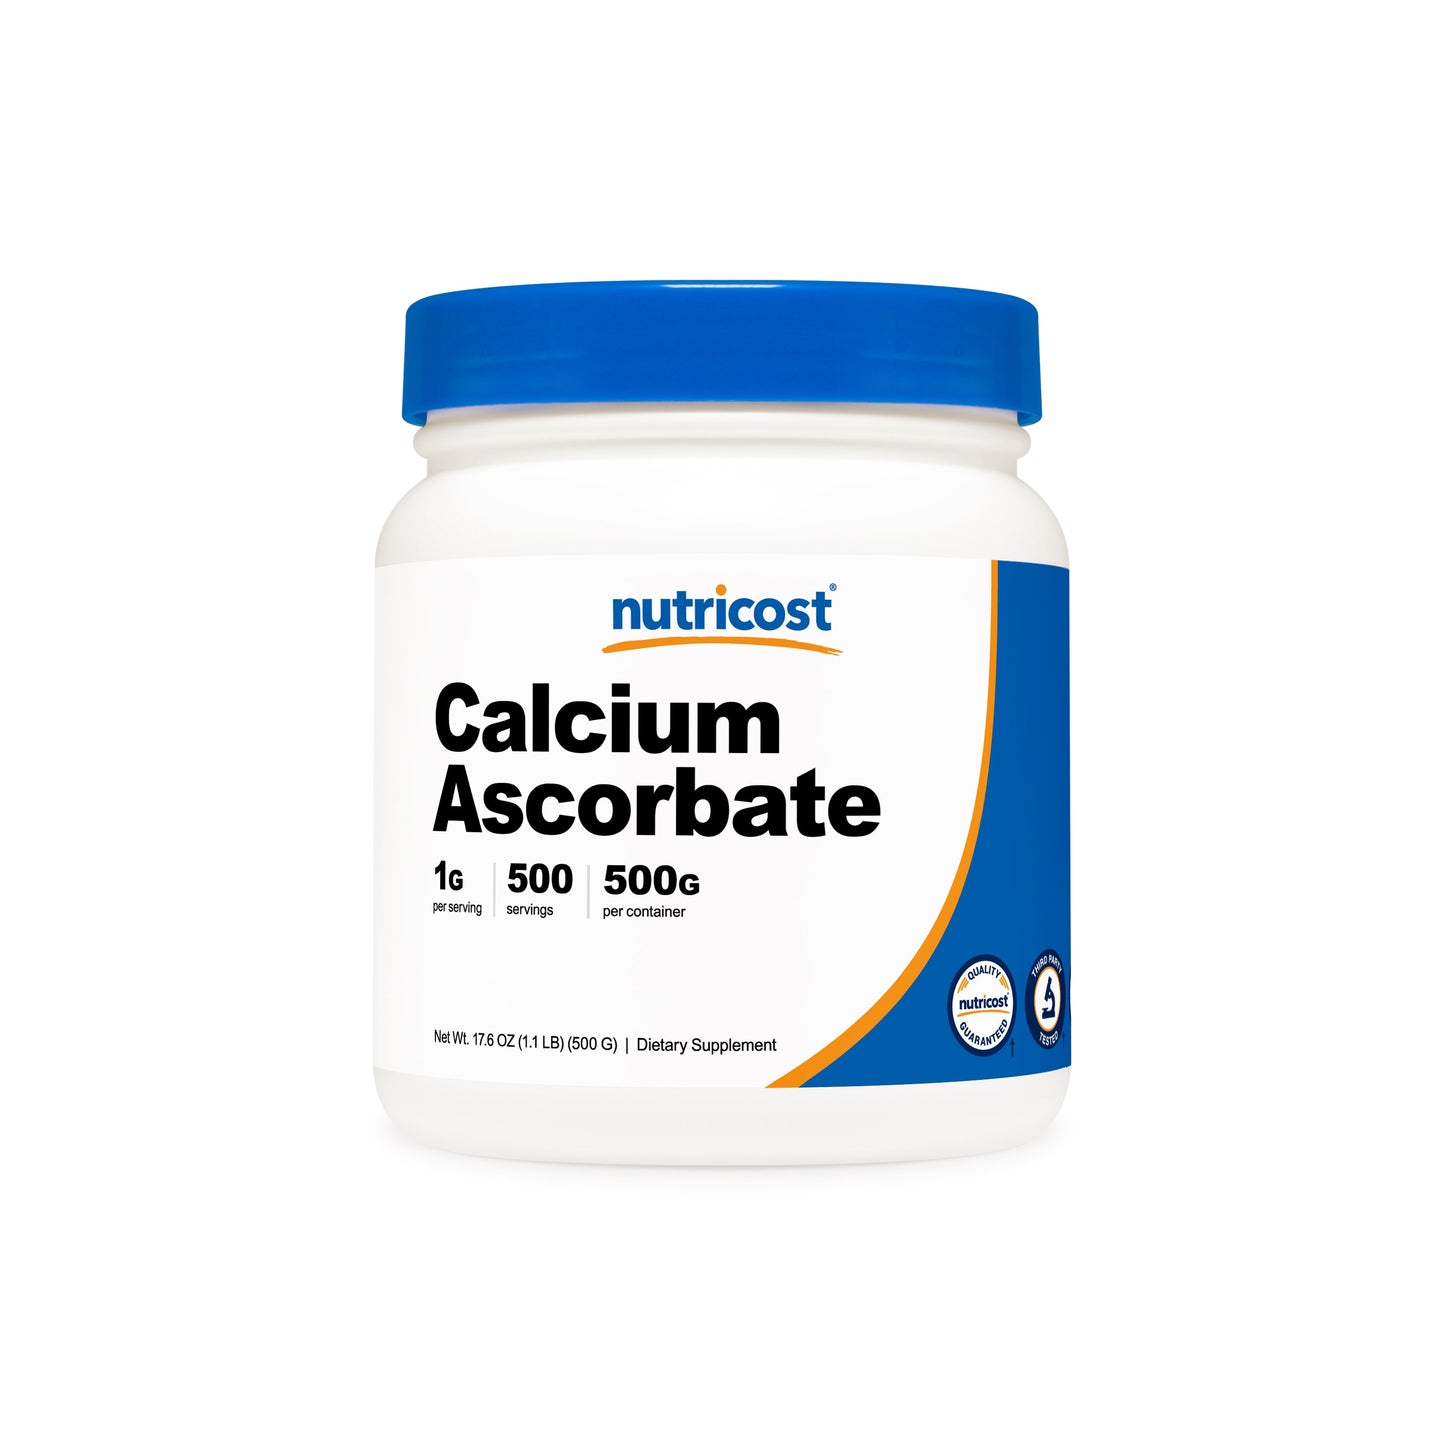 Nutricost Calcium Ascorbate Powder